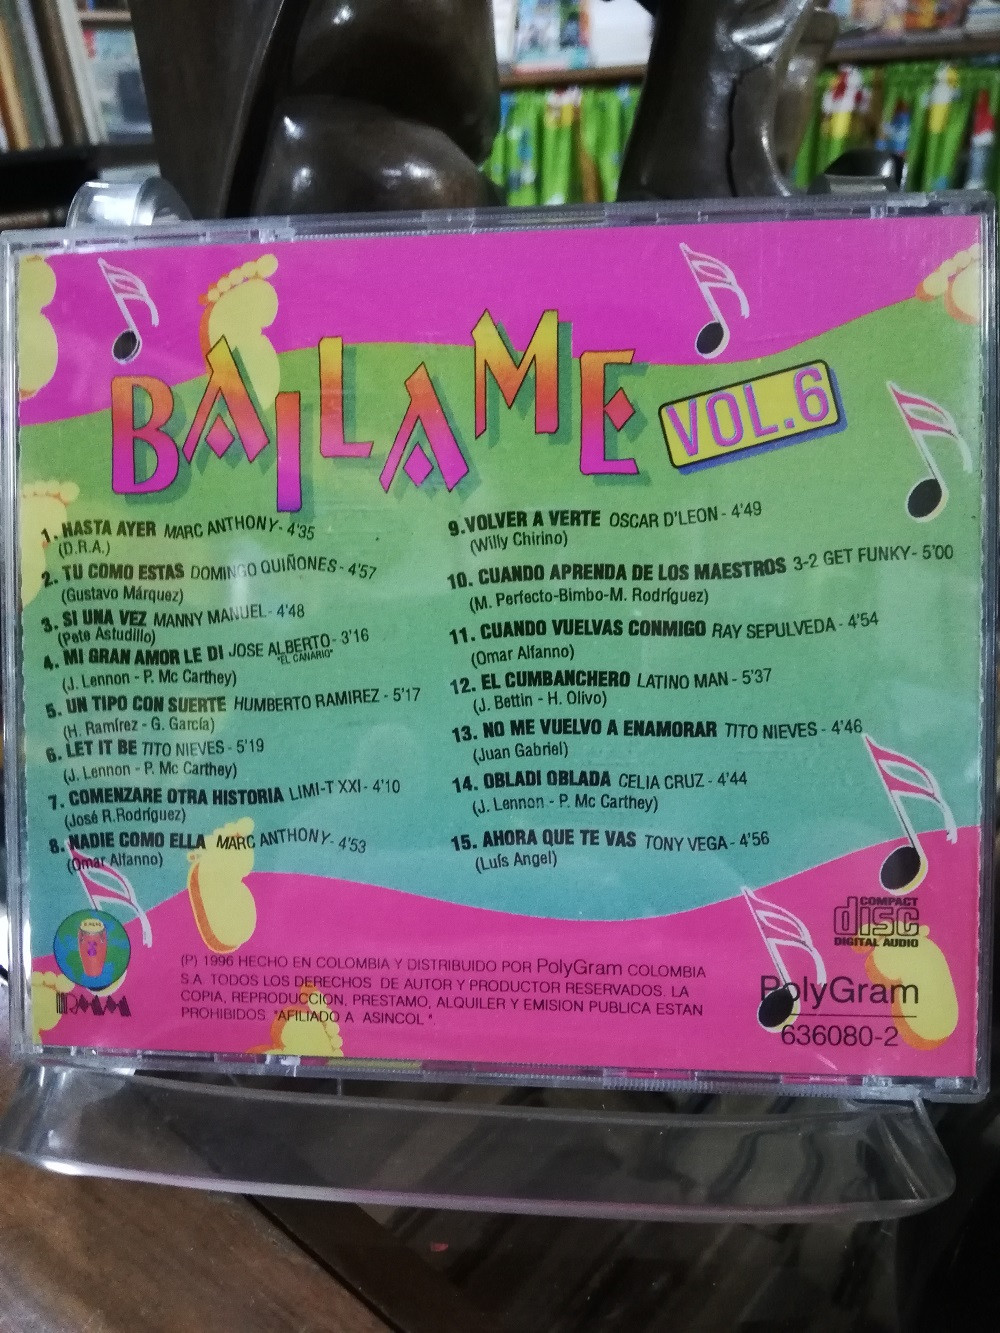 Imagen CD BAILAME - BAILAME VOL. 6 2